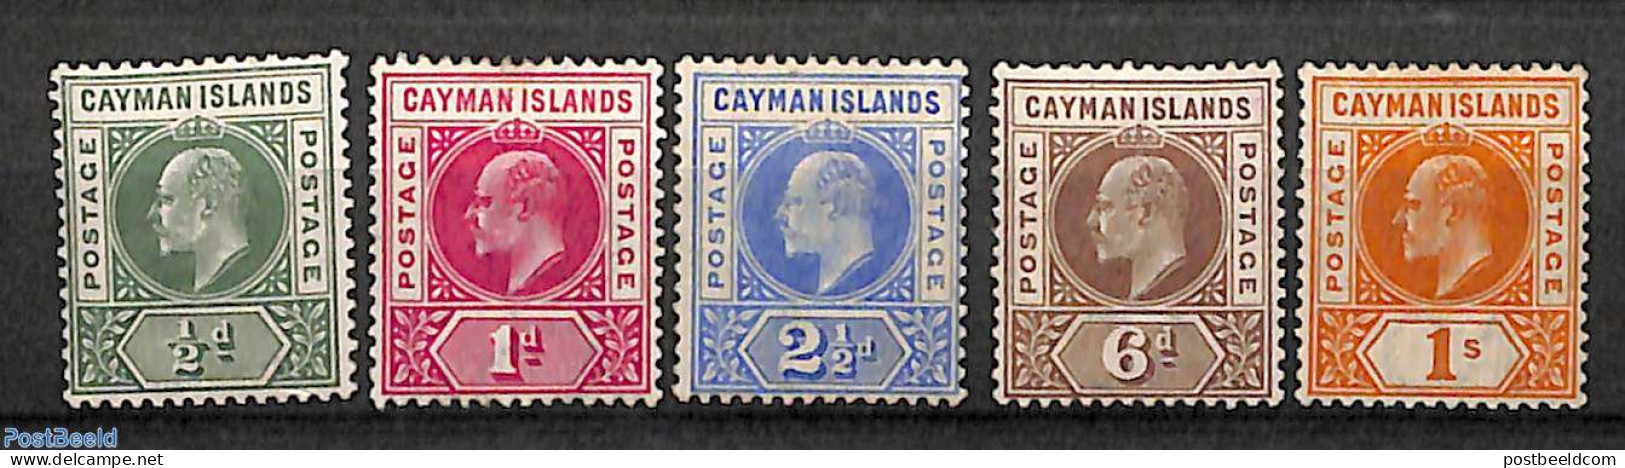 Cayman Islands 1901 Definitives, King Edward VII, WM CA-Crown, 5v, Unused (hinged) - Caimán (Islas)